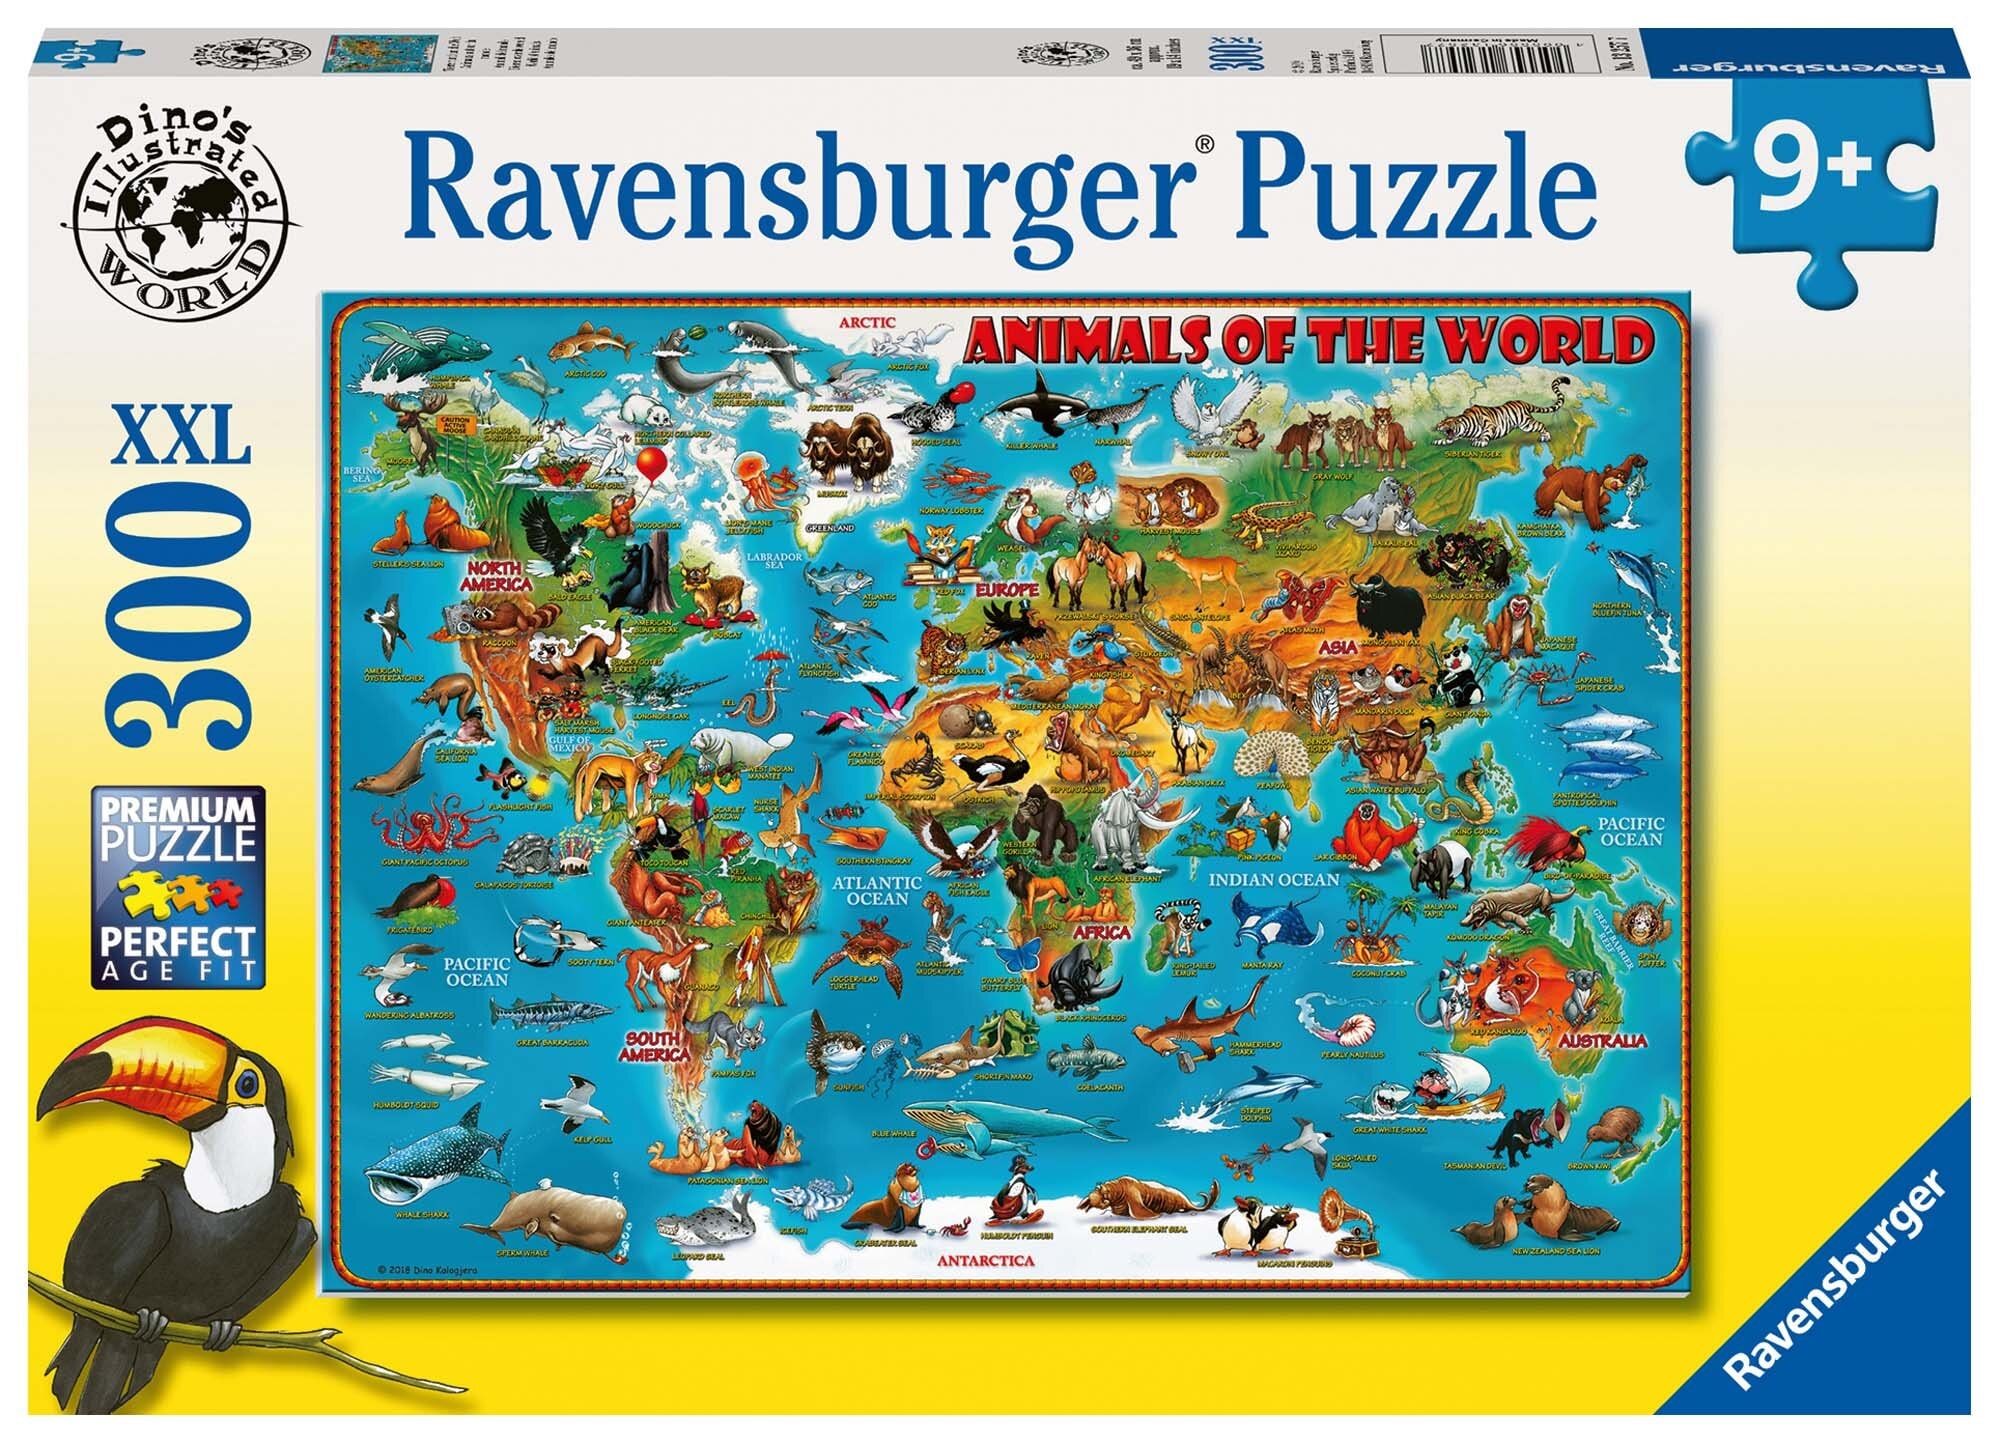 Ravensburger Pussel, Karta över djur från hela världen 300 bitar XXL